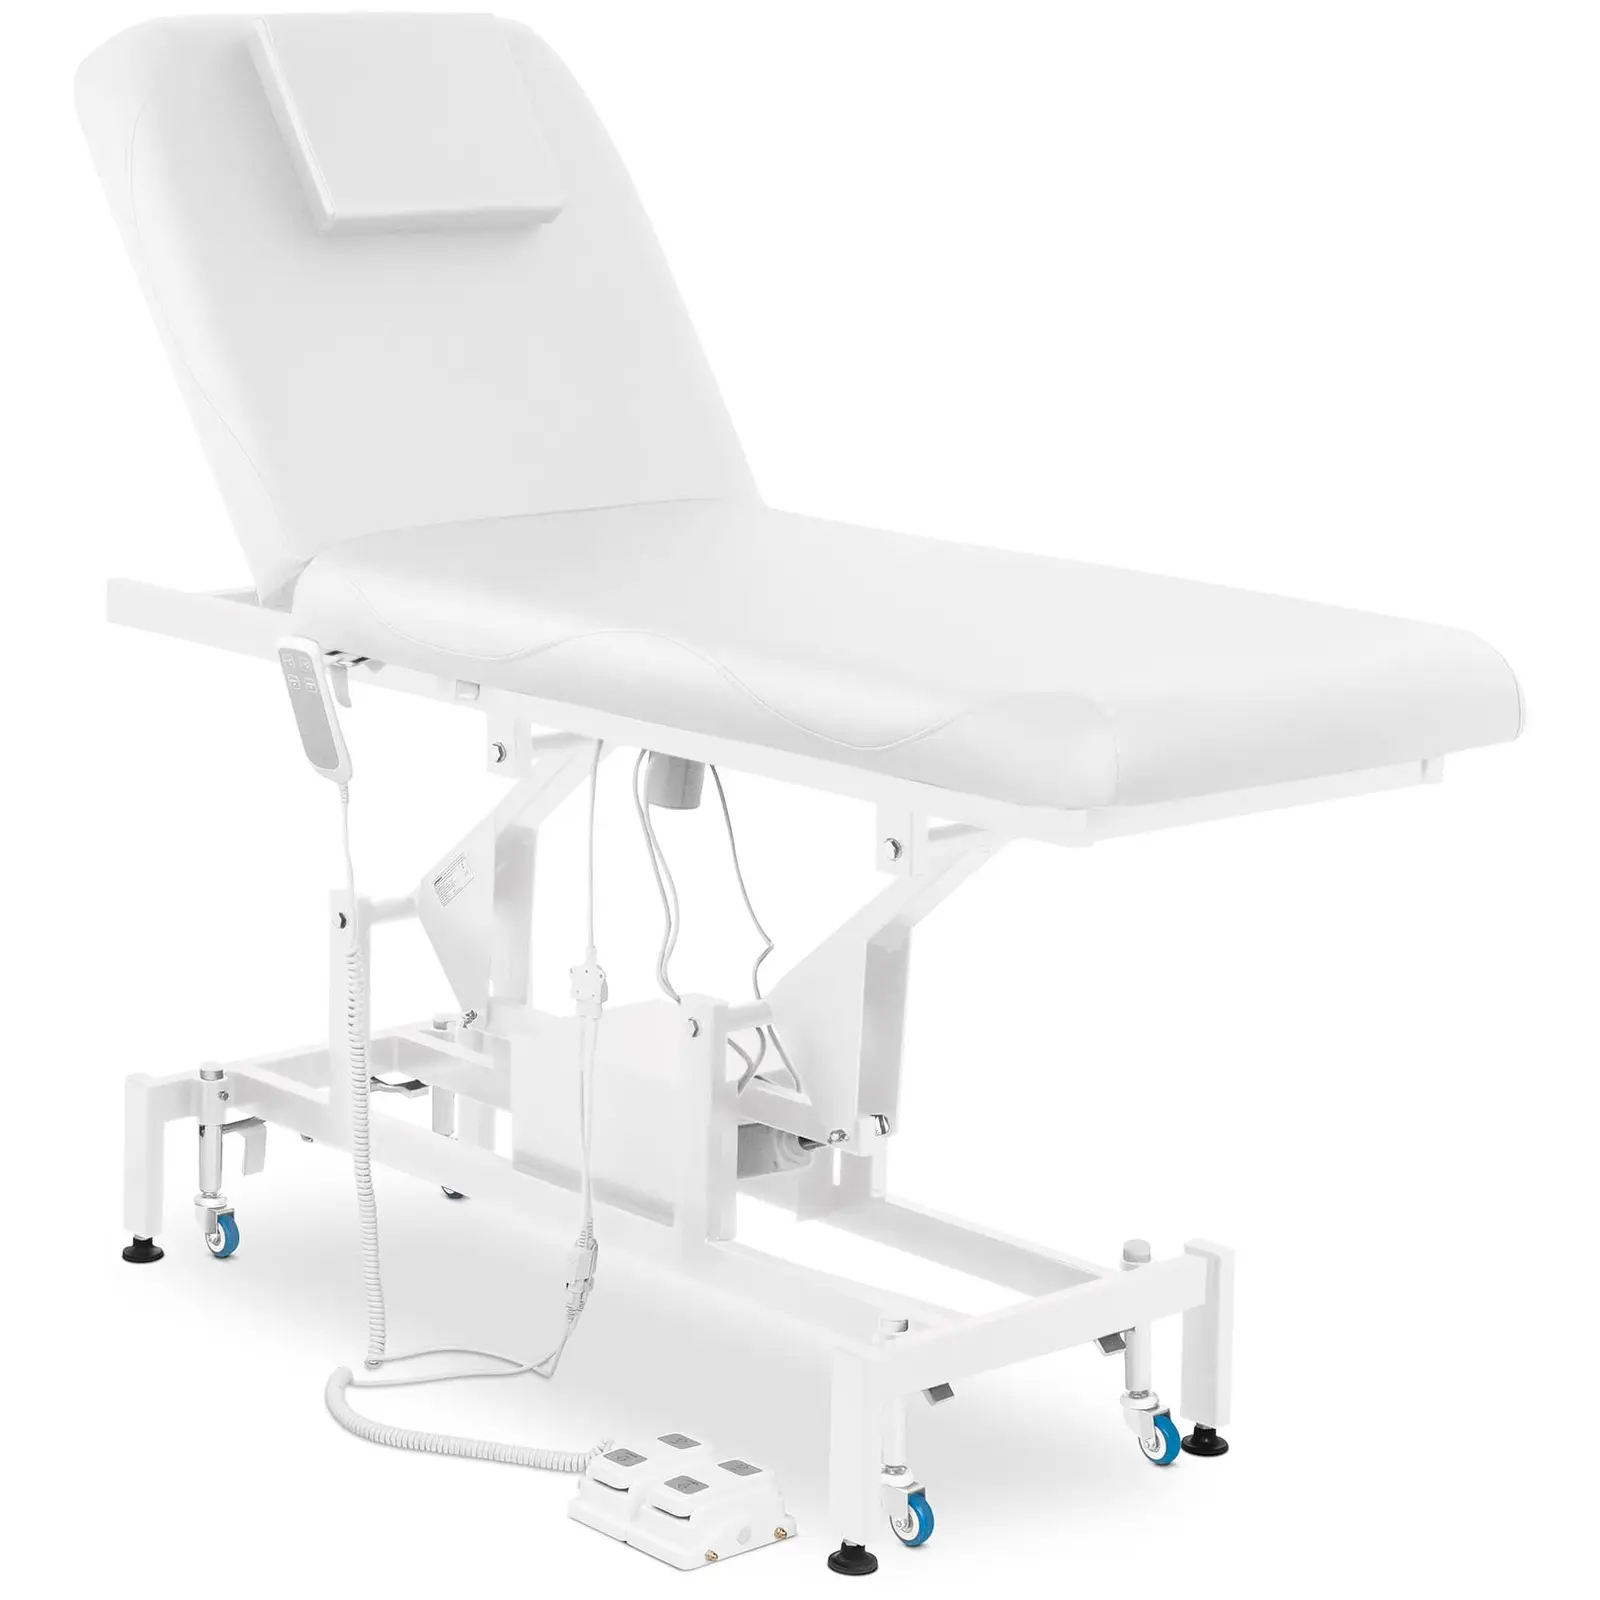 Table de massage - électrique - 100 W - 200 kg - White